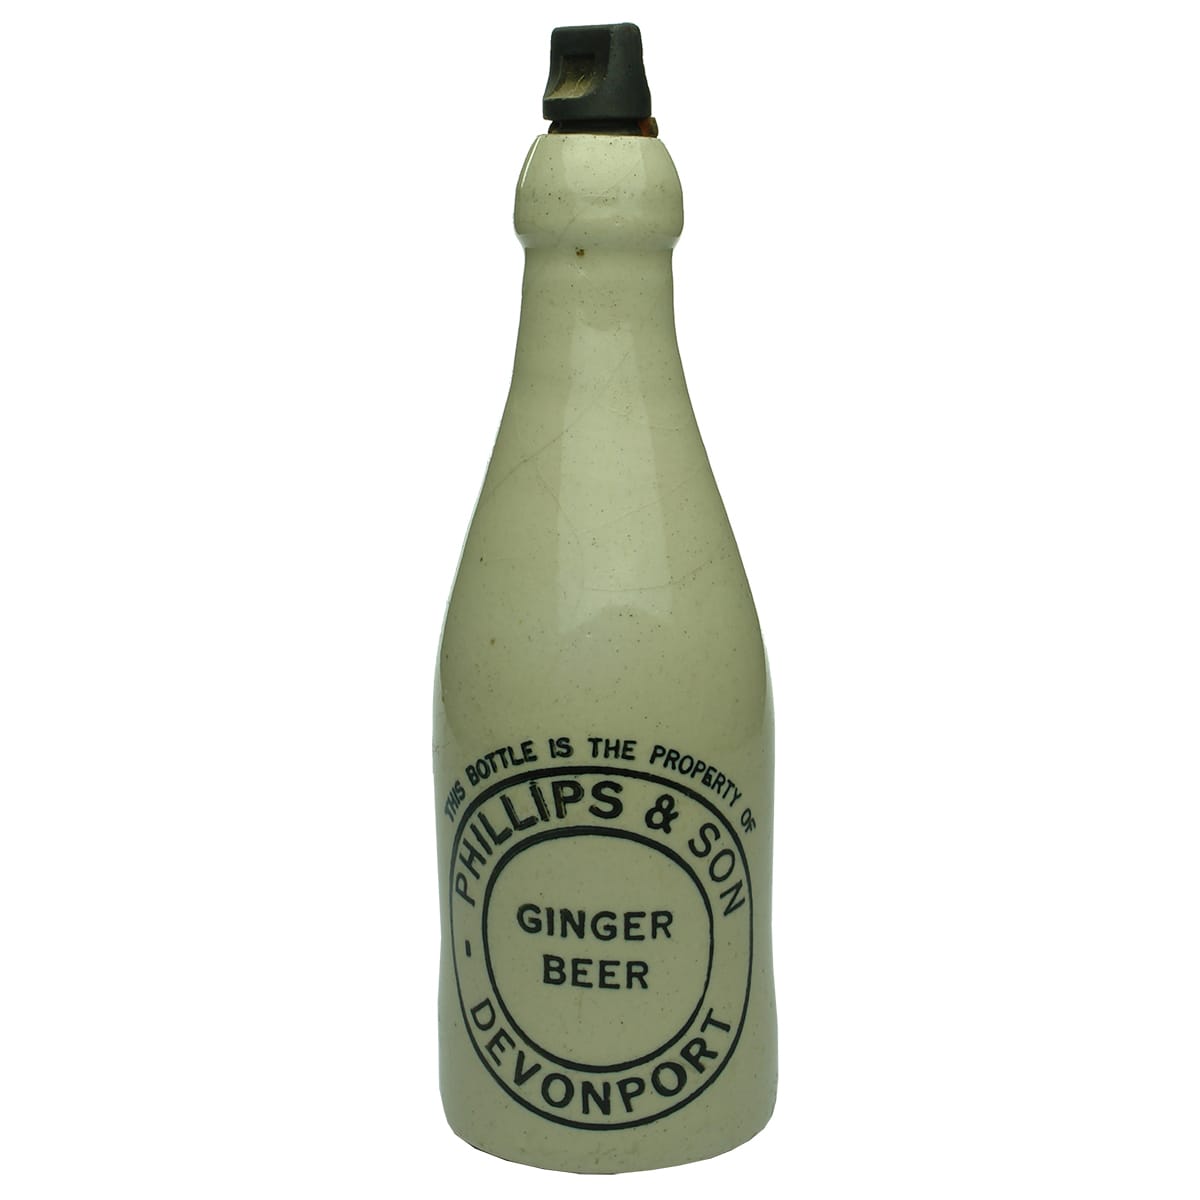 Ginger Beer. Phillips & Son, Devonport. All White. Champagne. Internal Thread. (Tasmania)